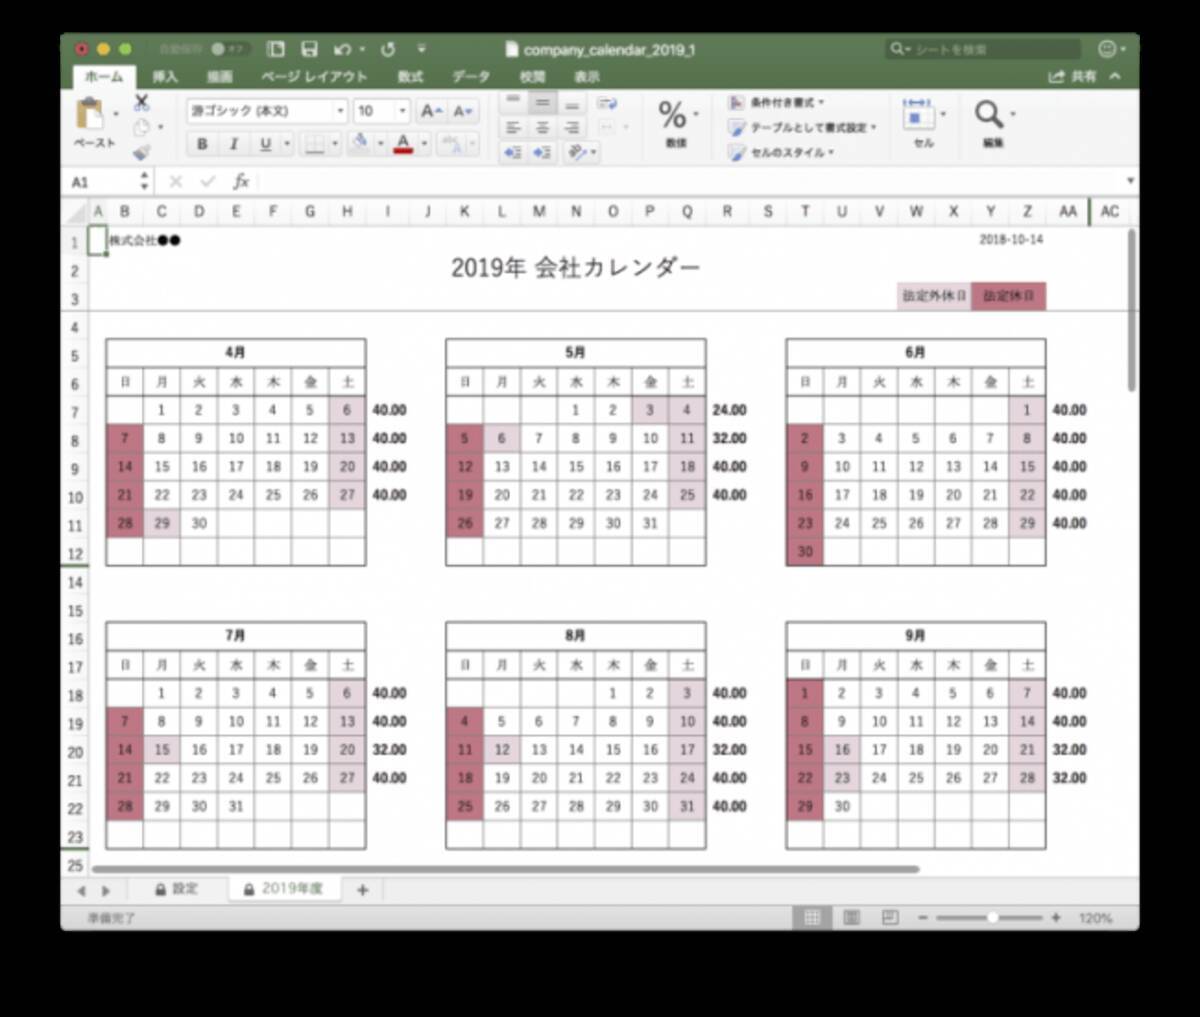 19年版 会社年間カレンダー簡単作成 Excel版 変形労働時間制に対応 無料ダウンロード 18年10月31日 エキサイトニュース